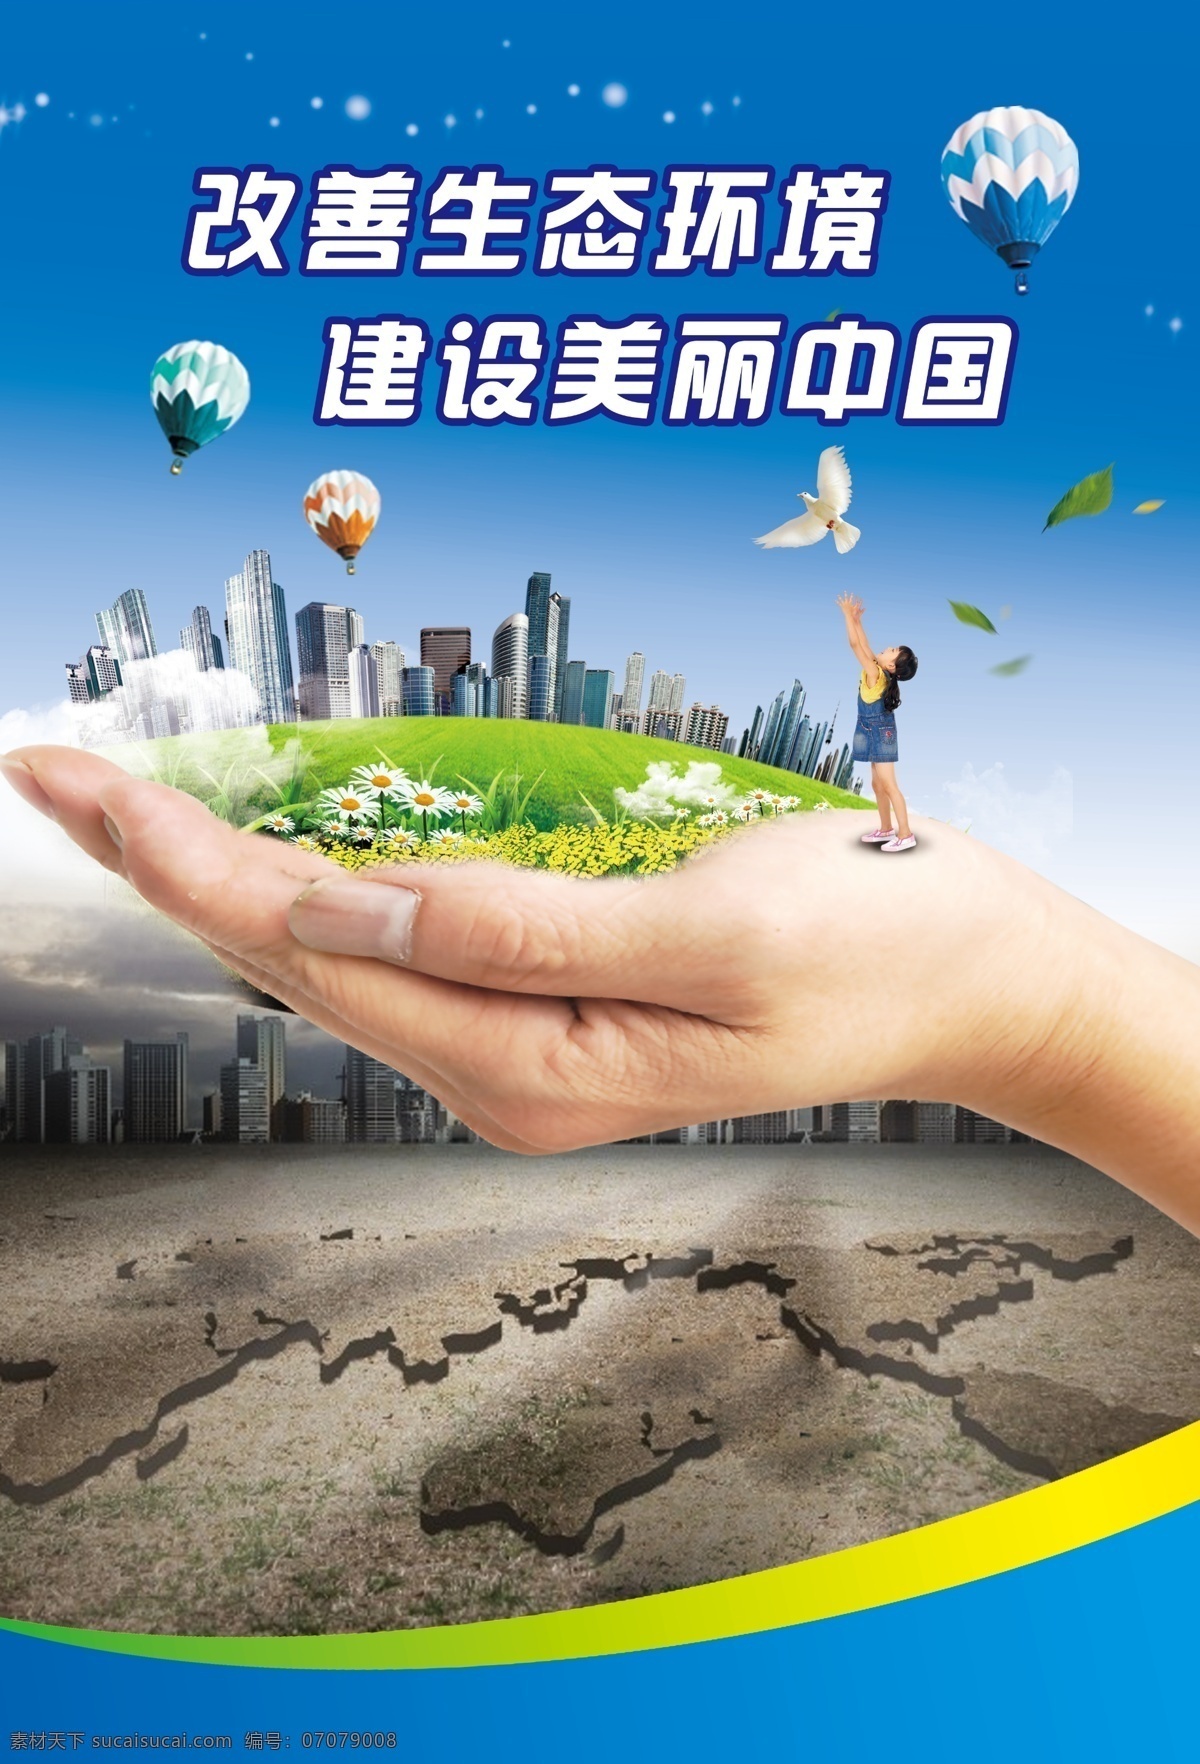 改善生态环境 建设美丽中国 低碳生活 蓝色